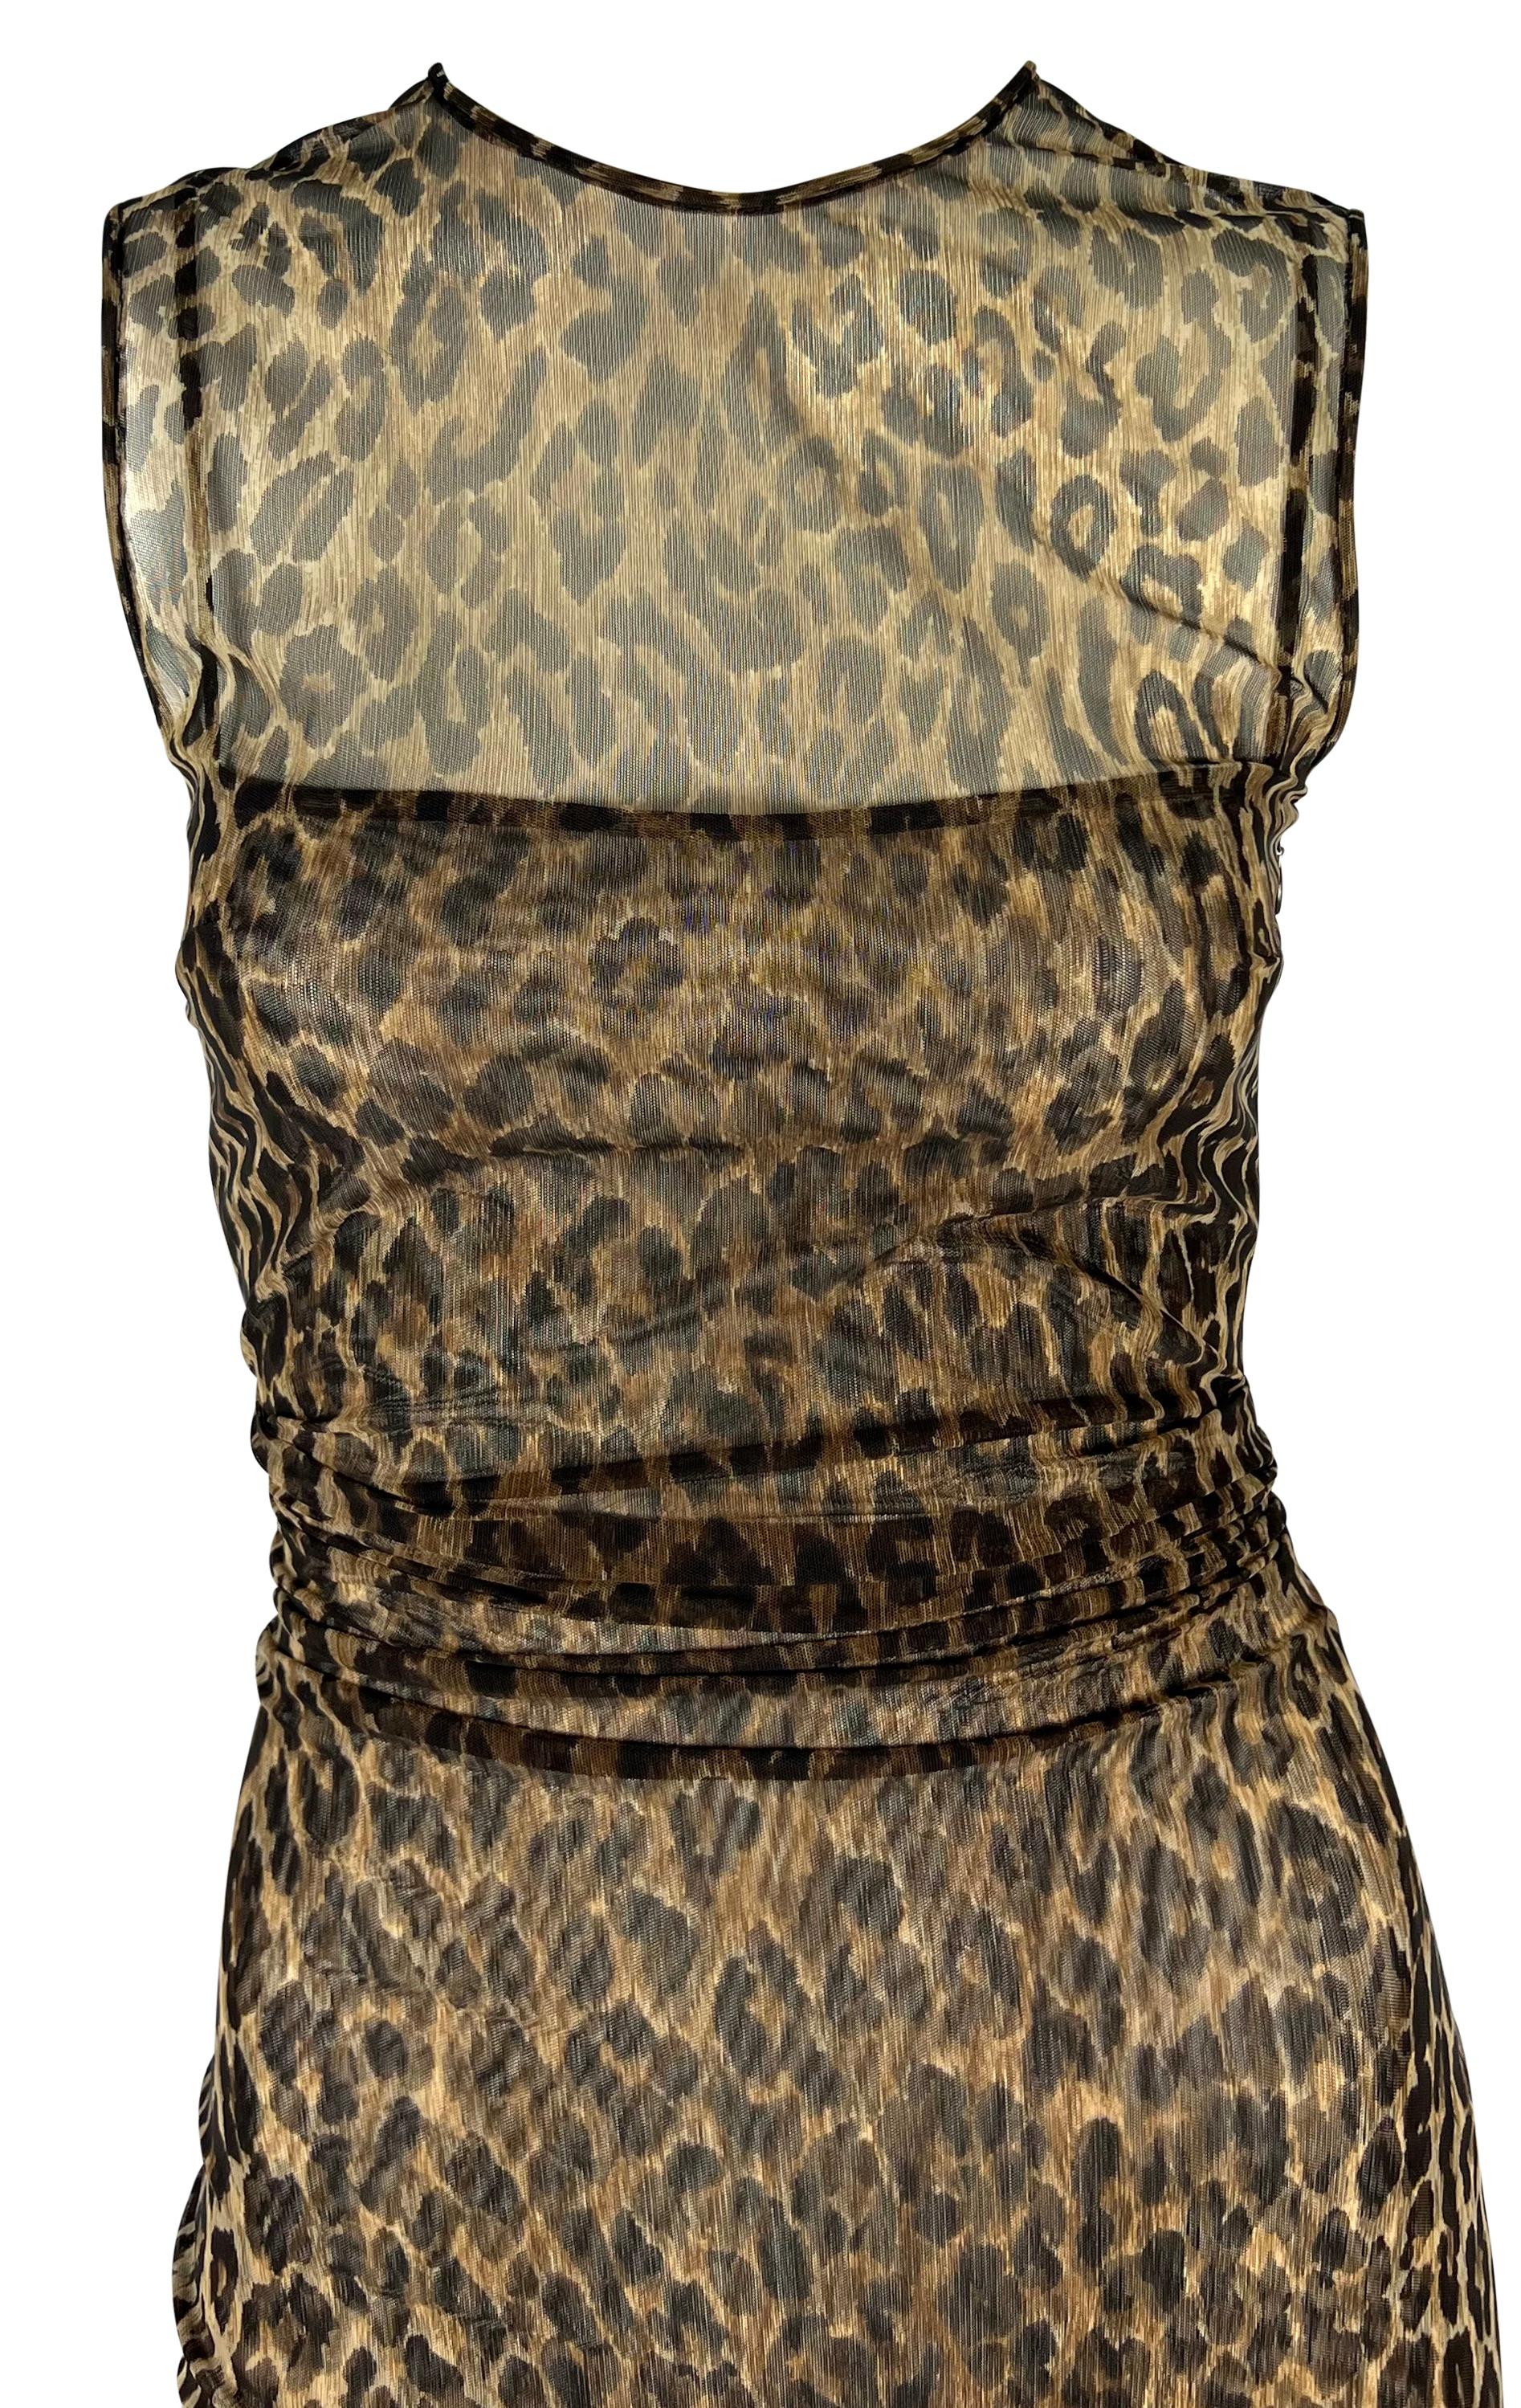 Dieses durchsichtige Kleid mit Gepardenmuster von Dolce & Gabbana aus den späten 1990er Jahren schmiegt sich an den Körper. Das Kleid aus Stretch-Mesh ist mit einem auffälligen Geparden-Print versehen und besteht aus zwei Schichten: einem Innenslip